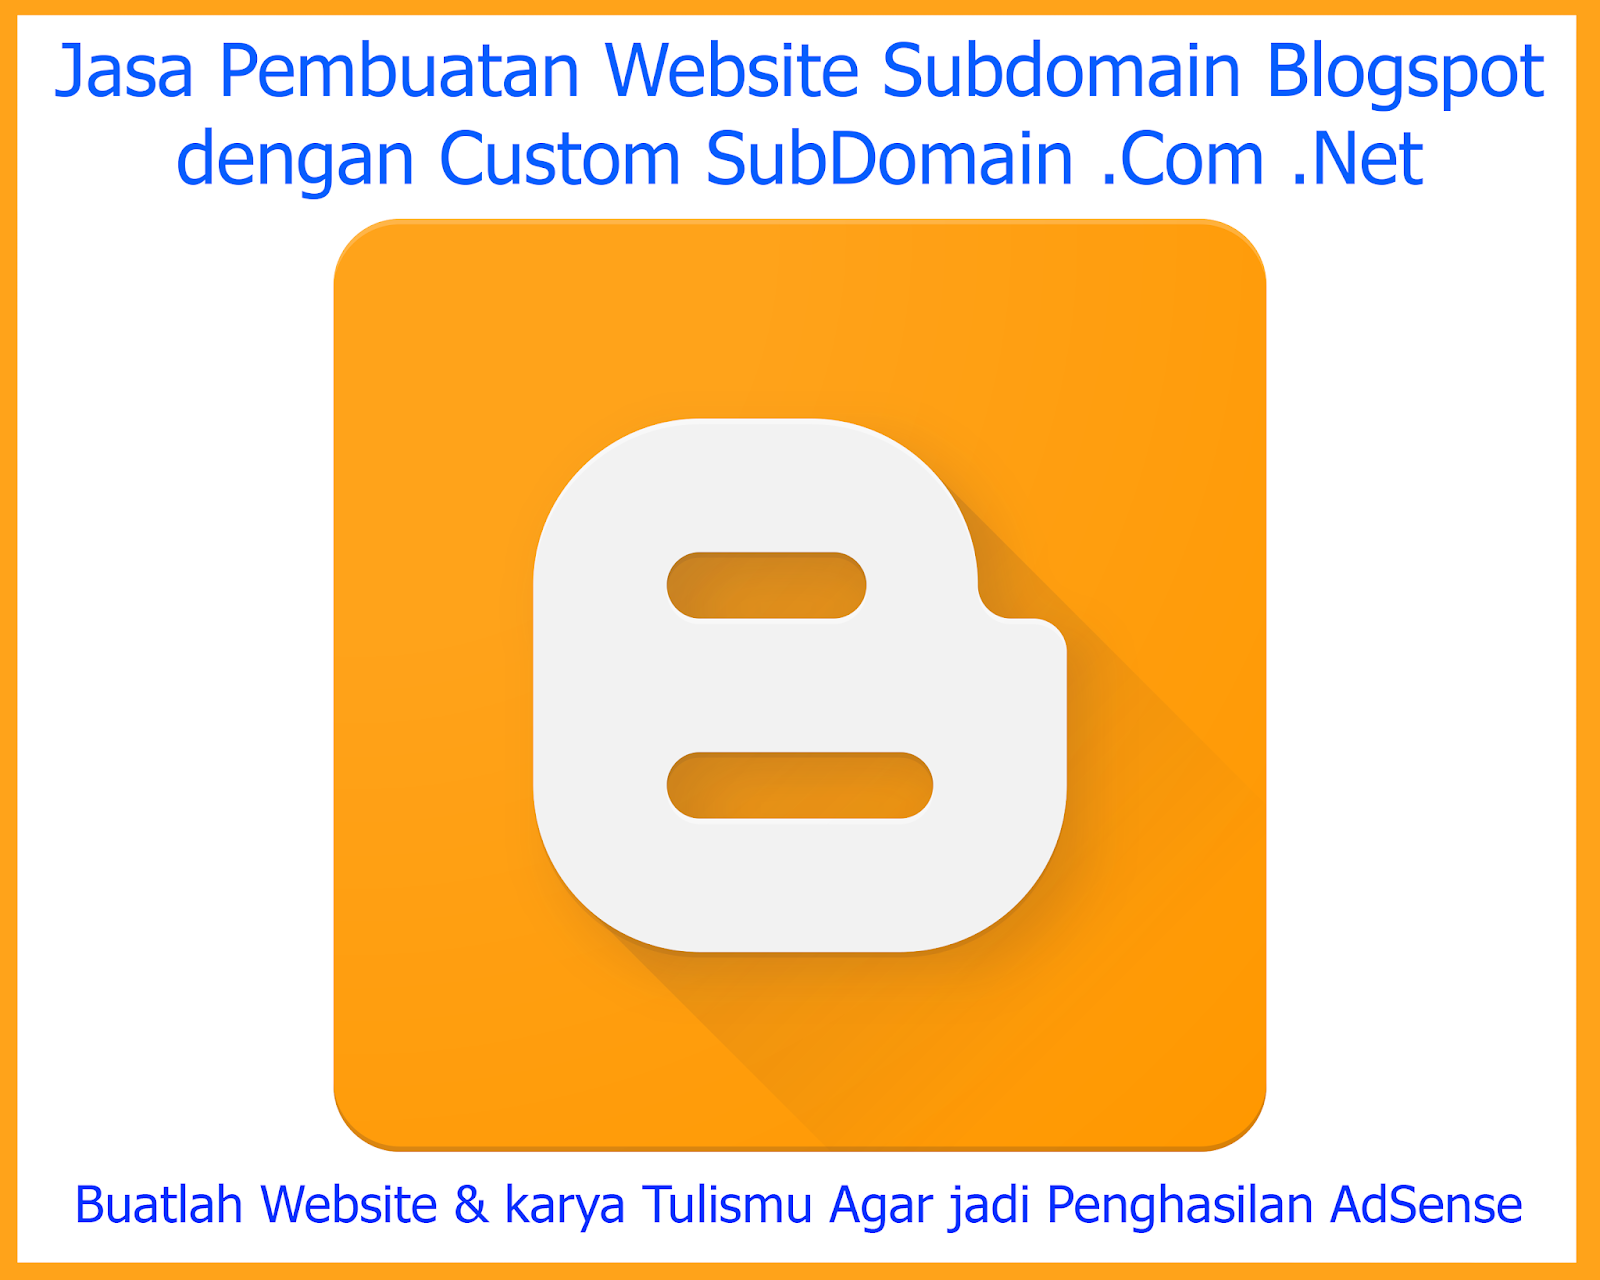 Jasa Pembuatan Website Subdomain dengan Custom Subdomain Net